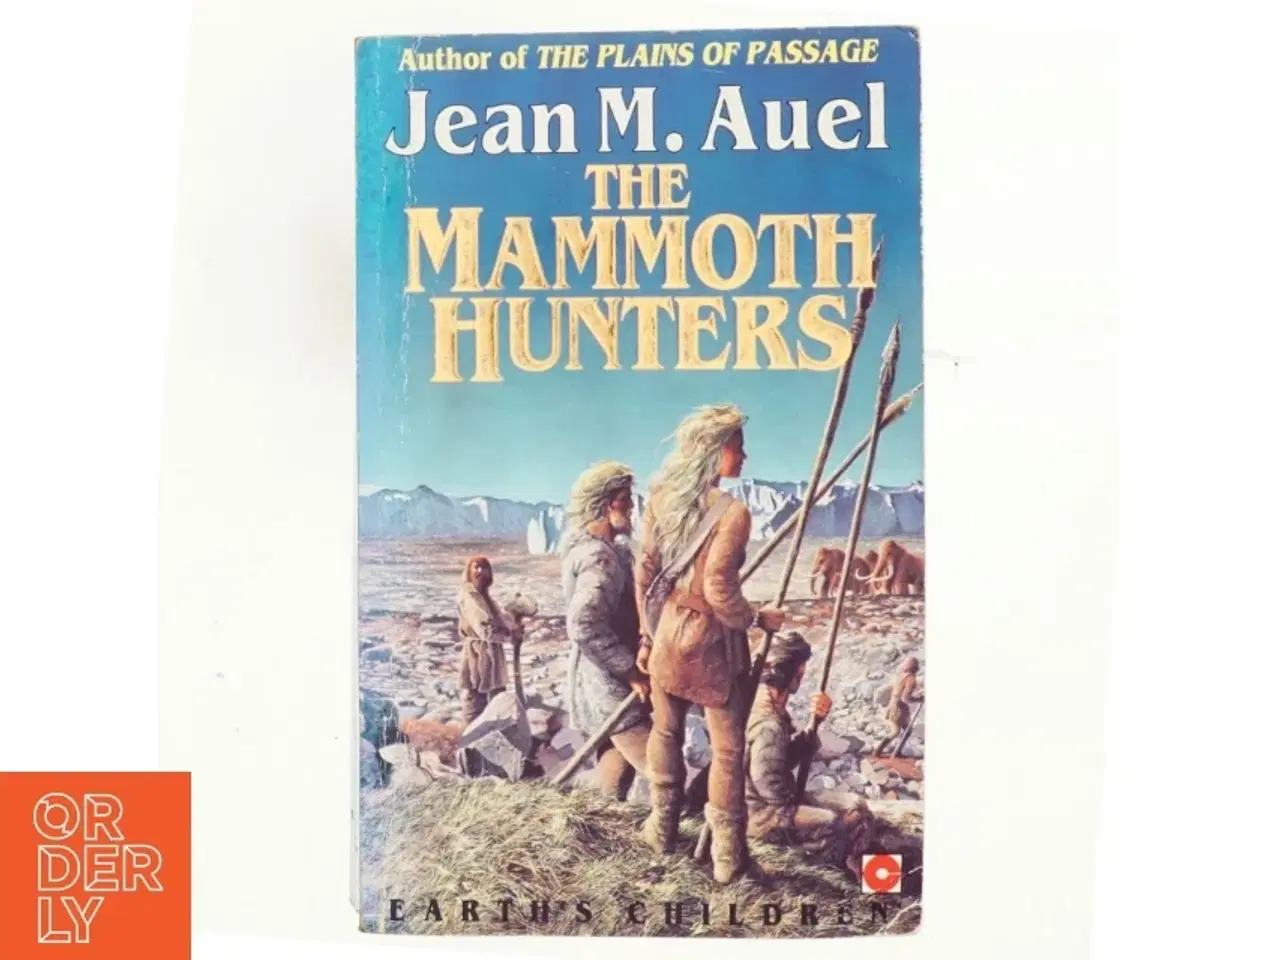 Billede 1 - The mammoth hunters af Jean M. Auel (Bog)